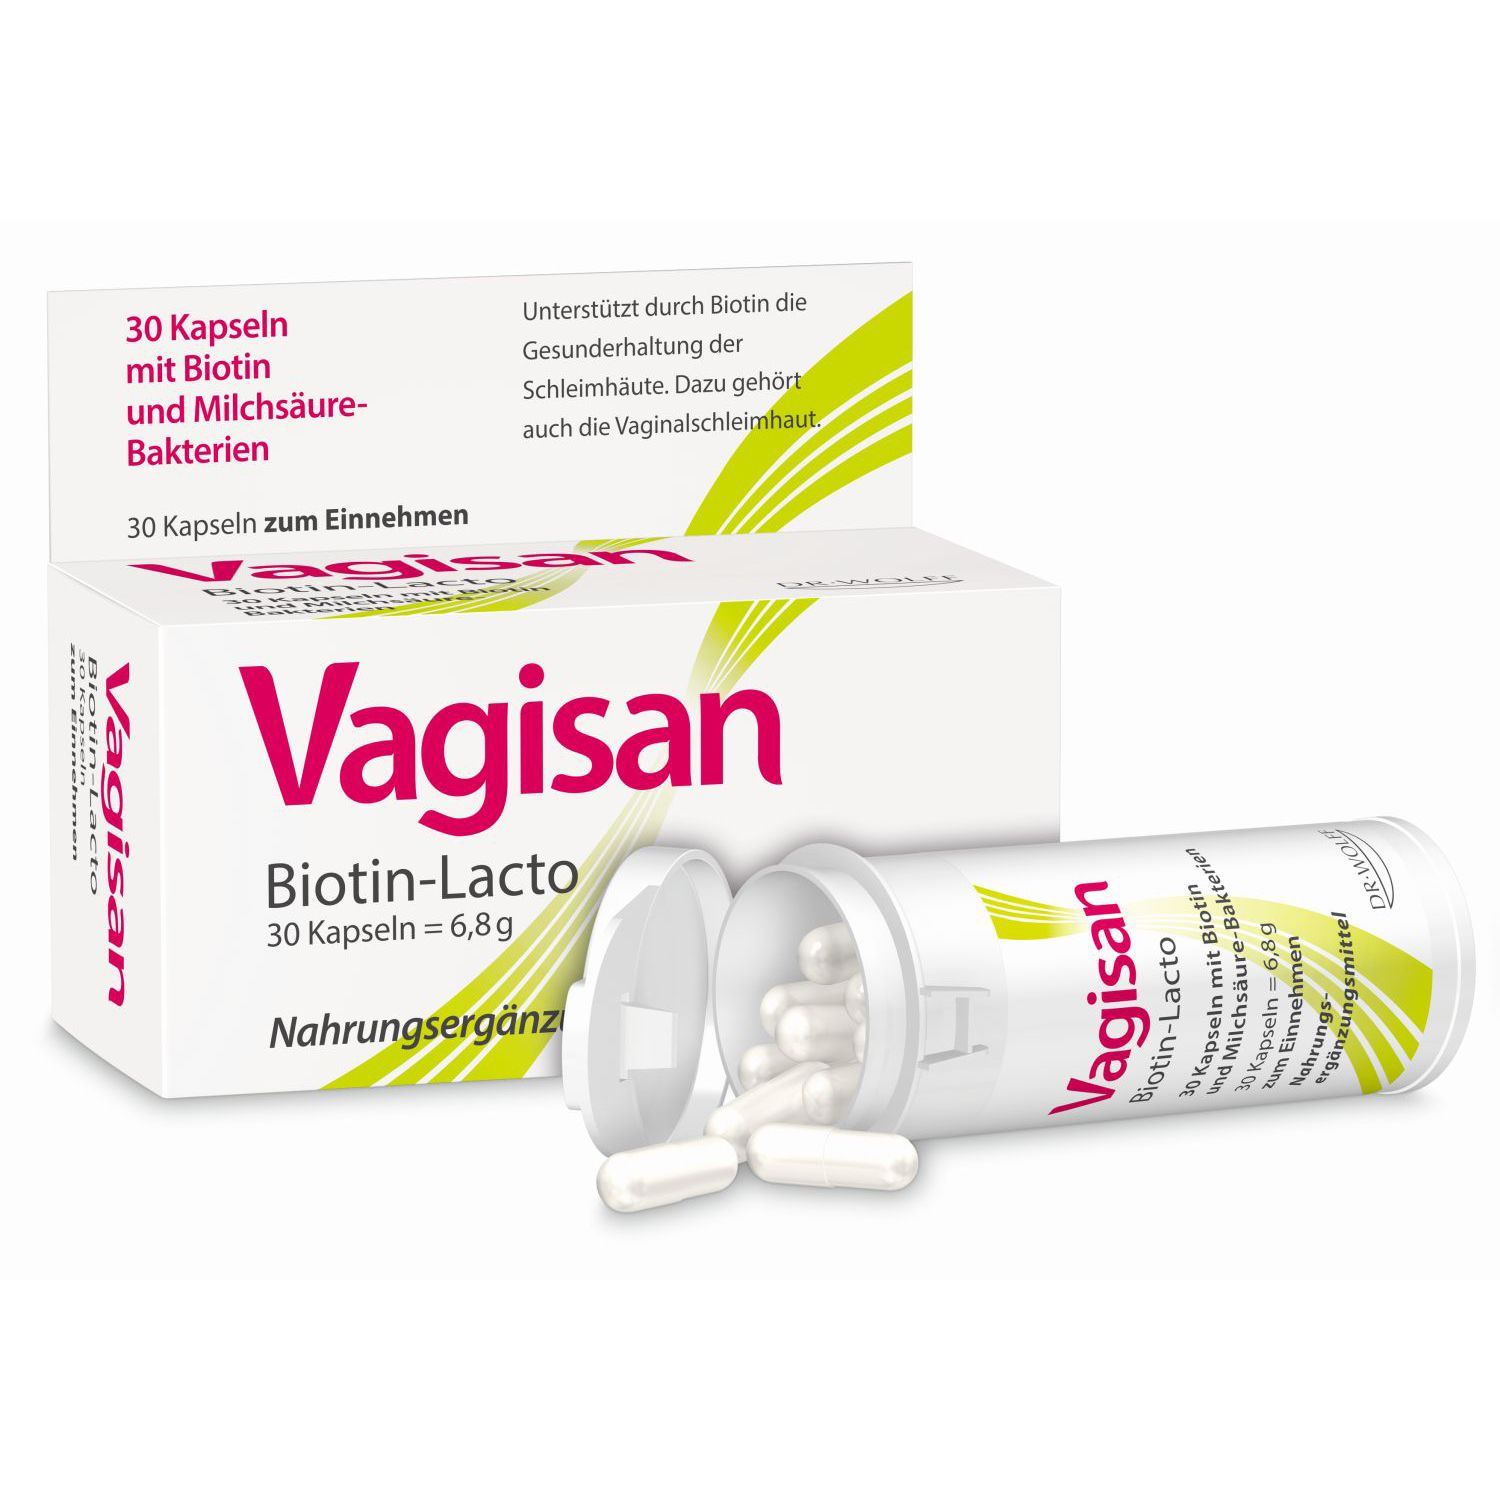 Vagisan® Biotin-Lacto